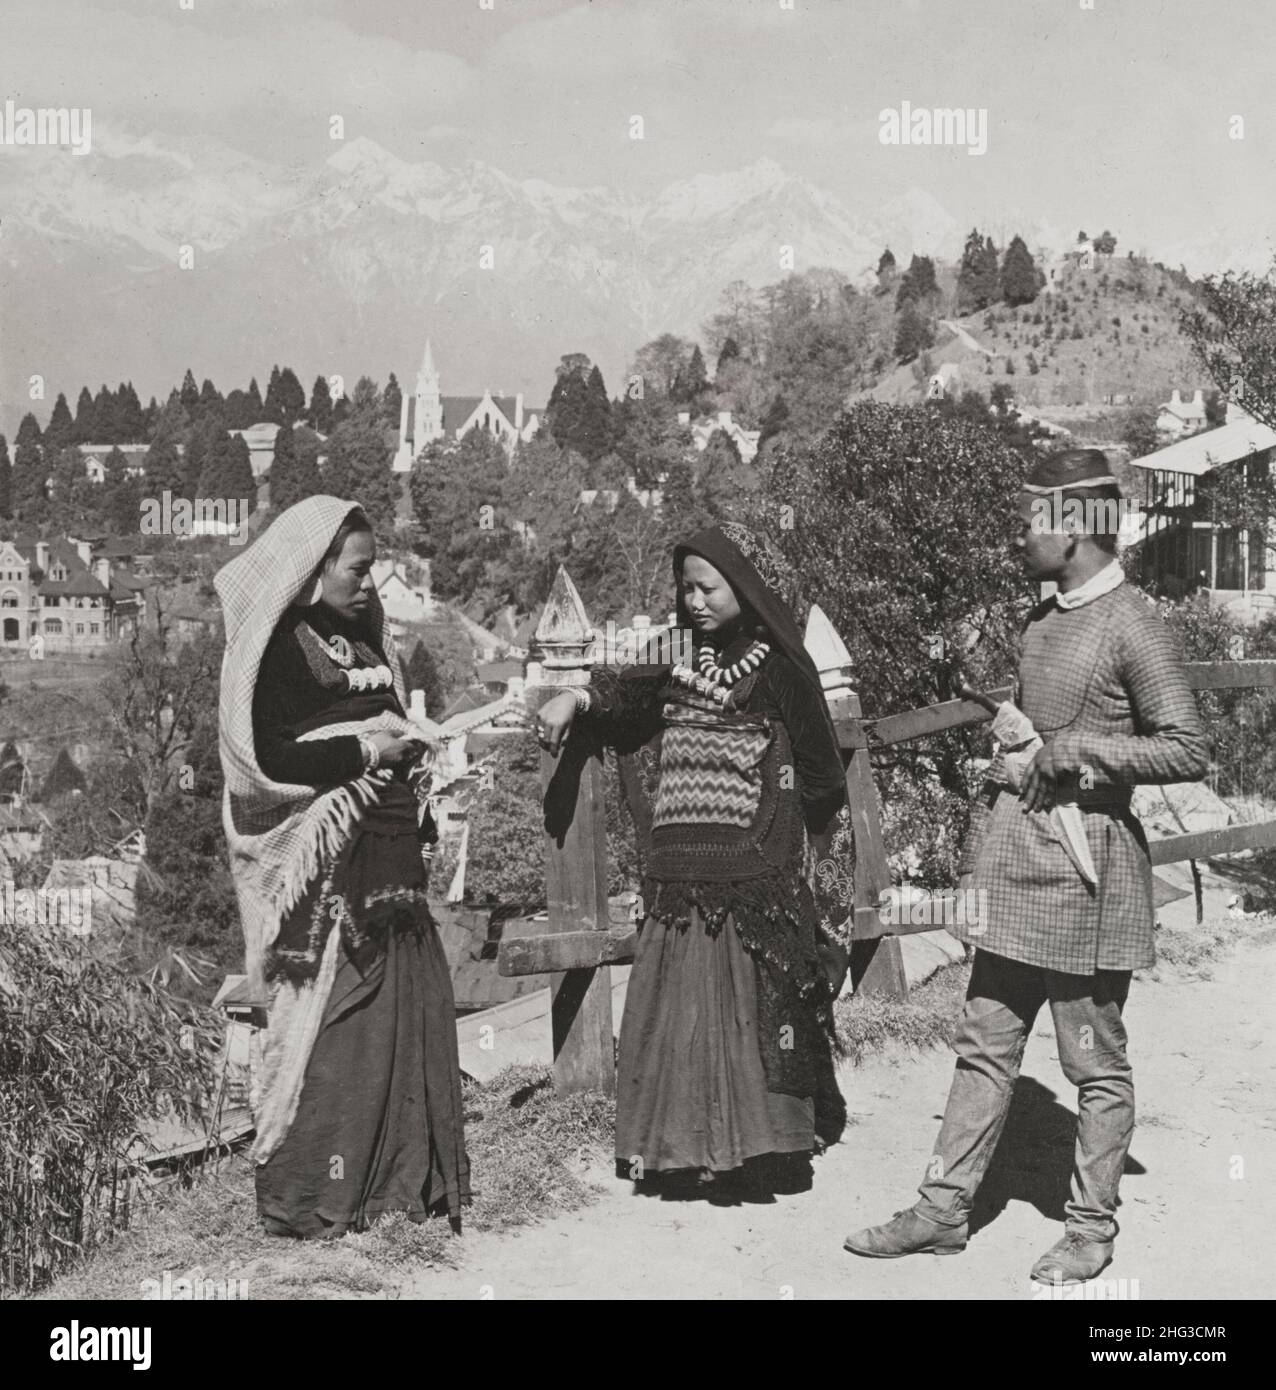 Foto vintage campesinos nepaleses en Darjeeling, el gran centro de salud de Bengala, Himalaya en Distance, India. 1907 Foto de stock